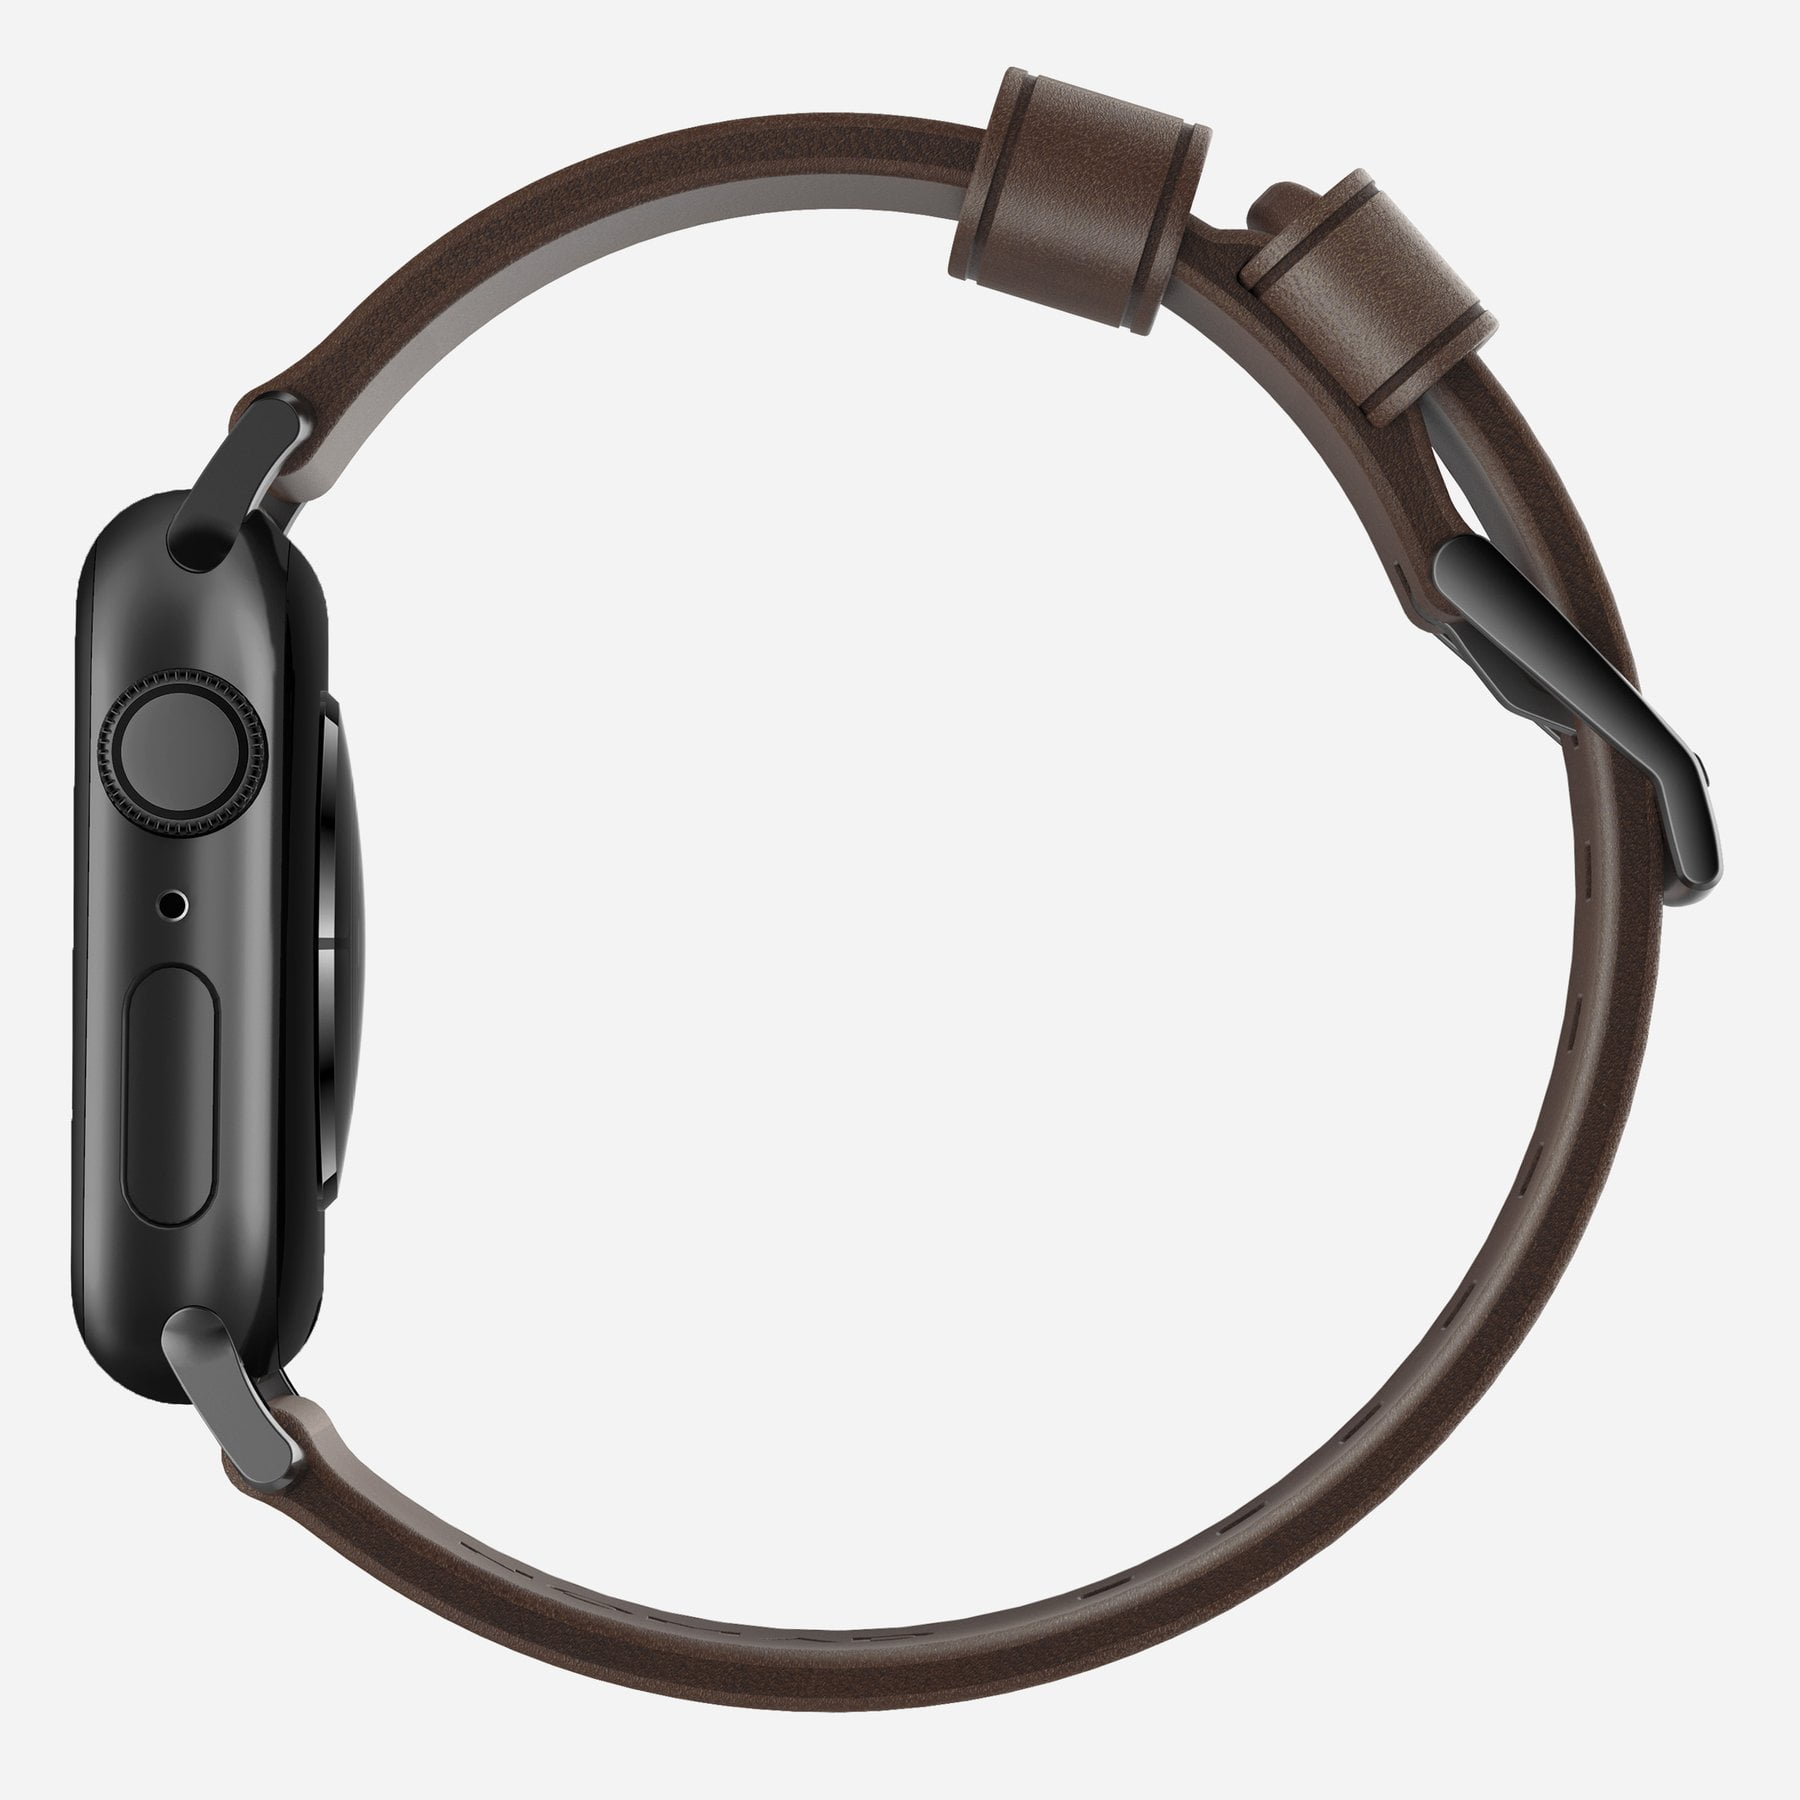 Bracelet de montre connectée cuir véritable 40 mm Uniq Mondain Apple Watch  4 - Montres - Accessoires - Équipements